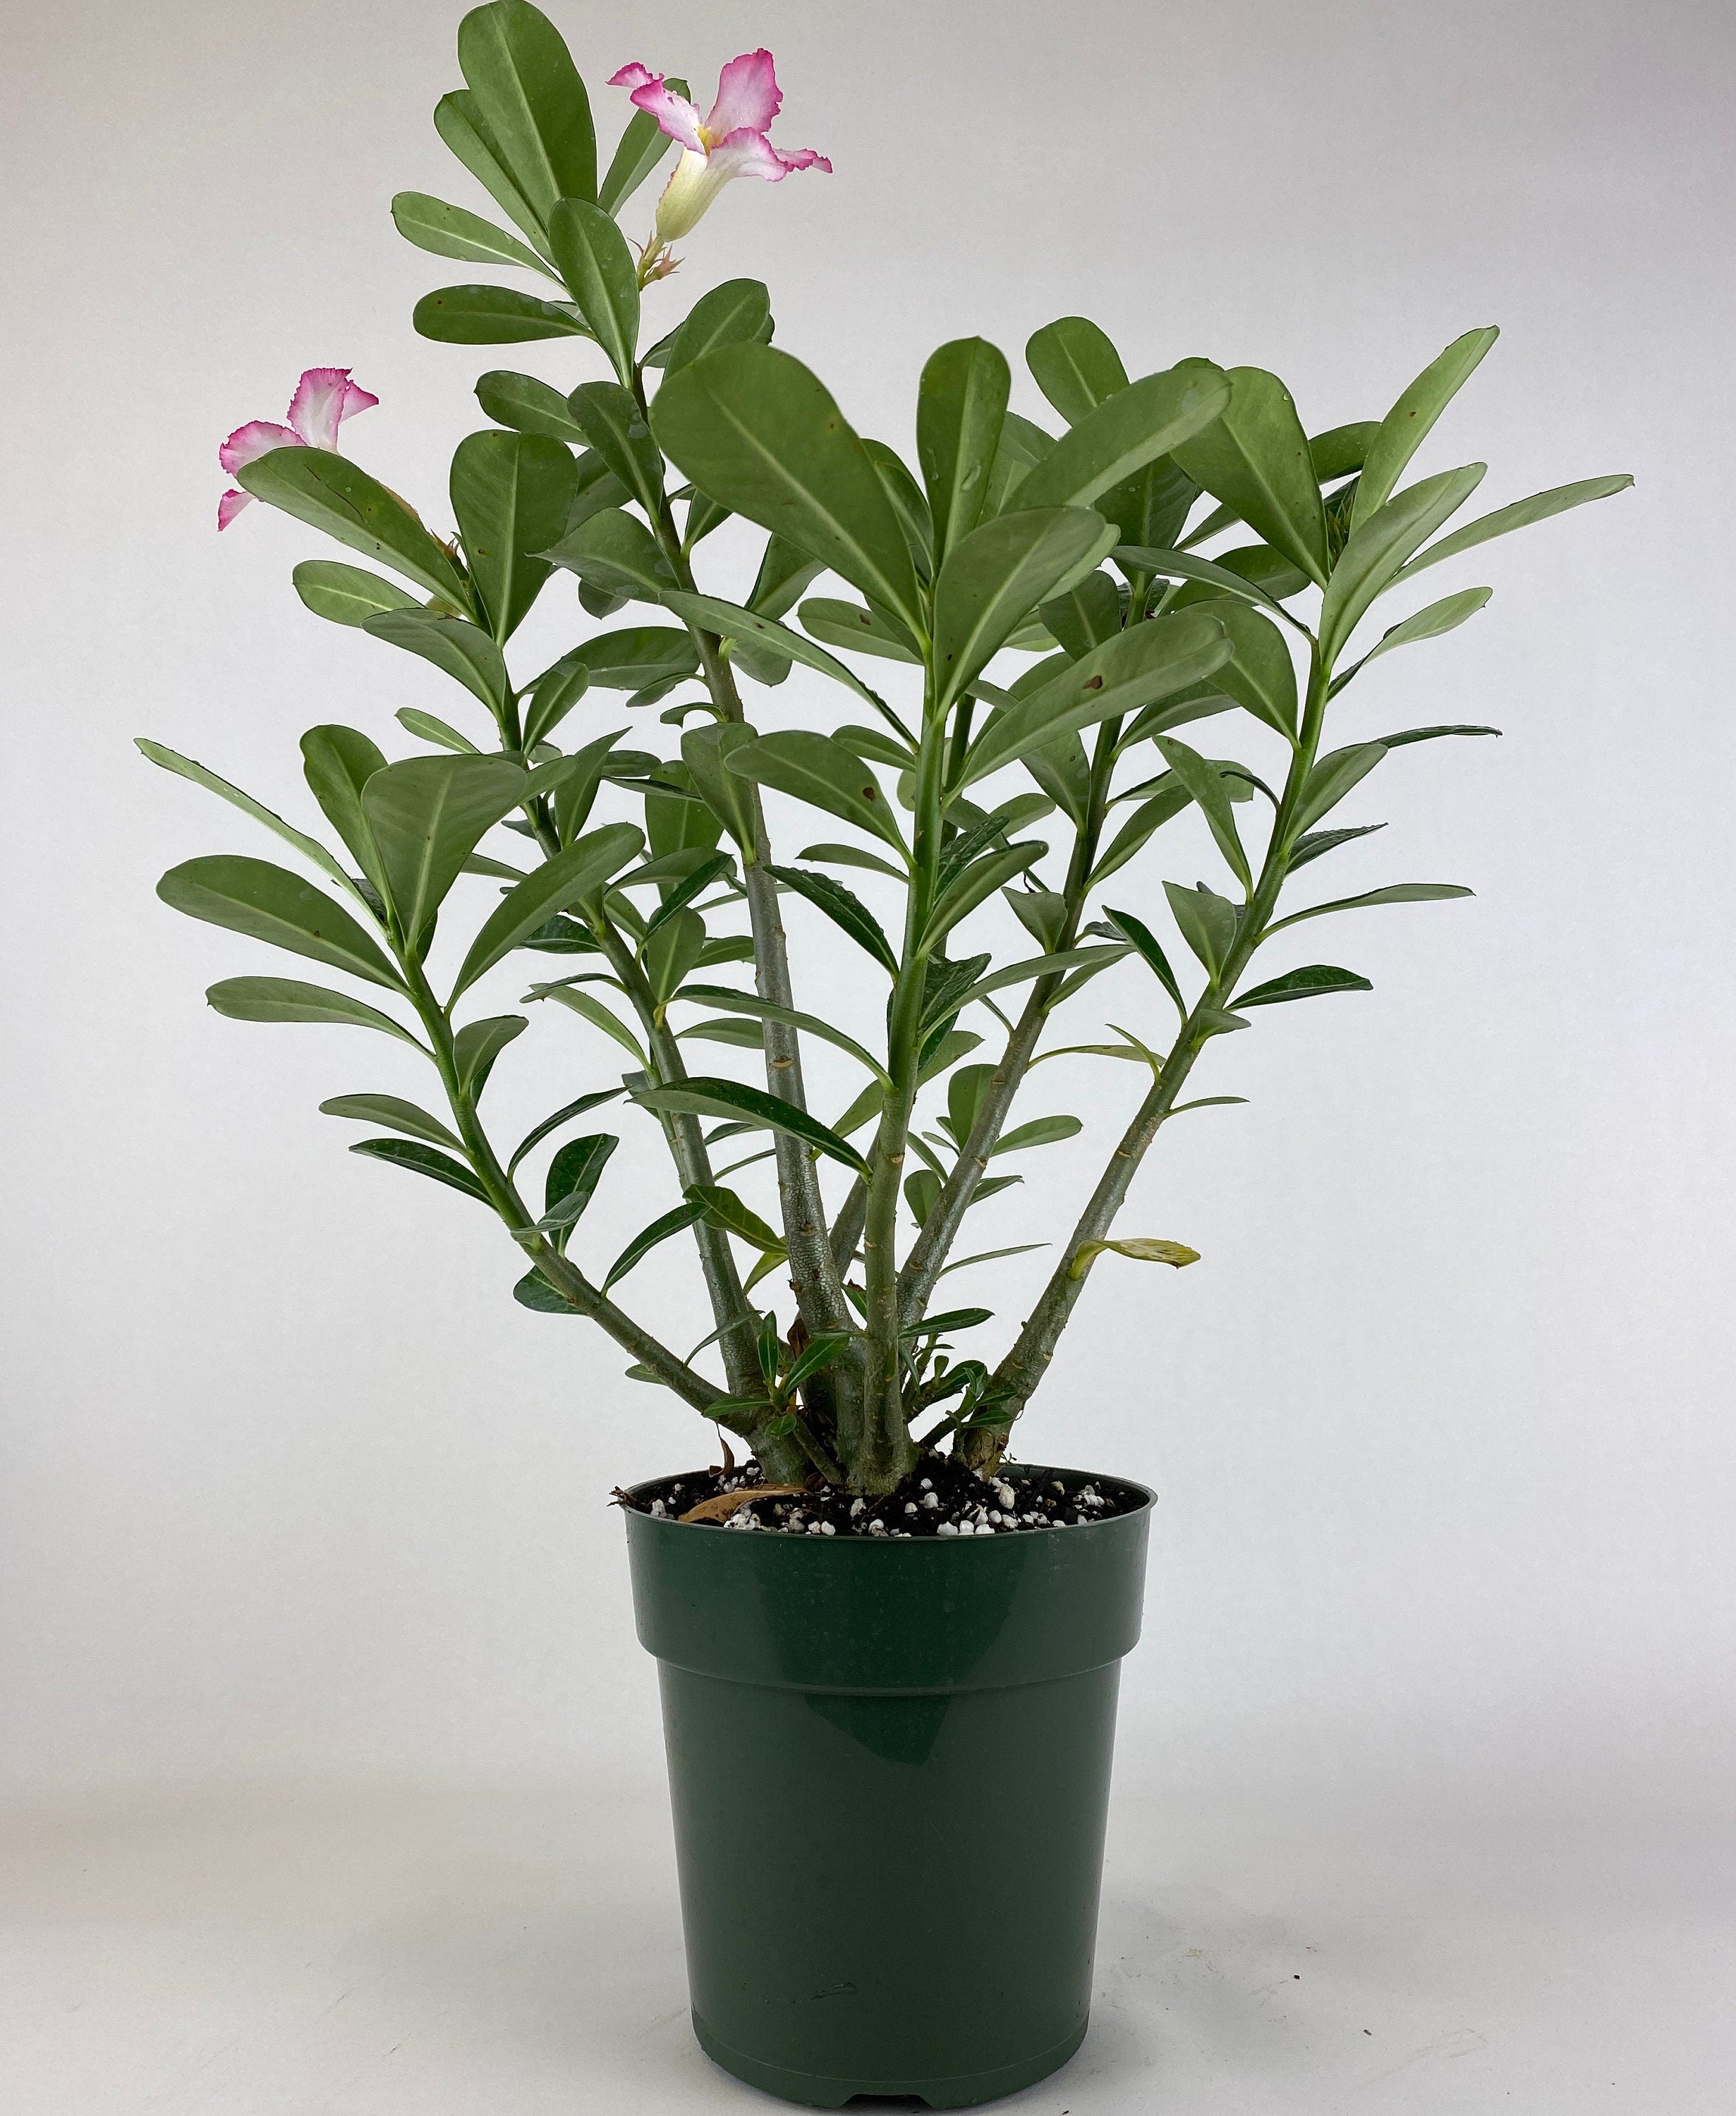 Rose du désert (Adenium obesum) - Willemse